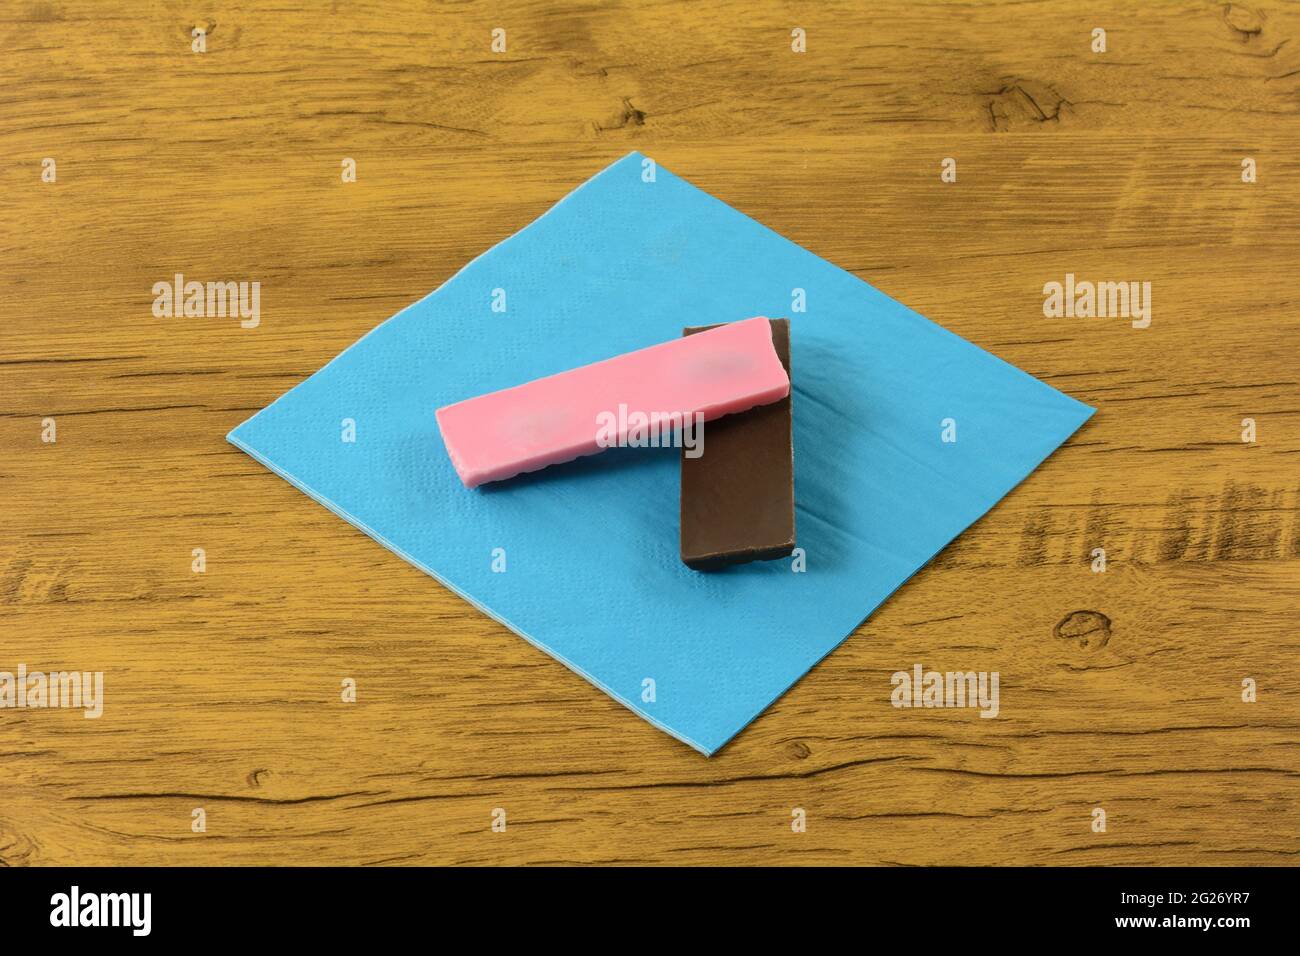 Barre de bonbons au chocolat au lait et aux fraises sur une serviette en papier bleue Banque D'Images